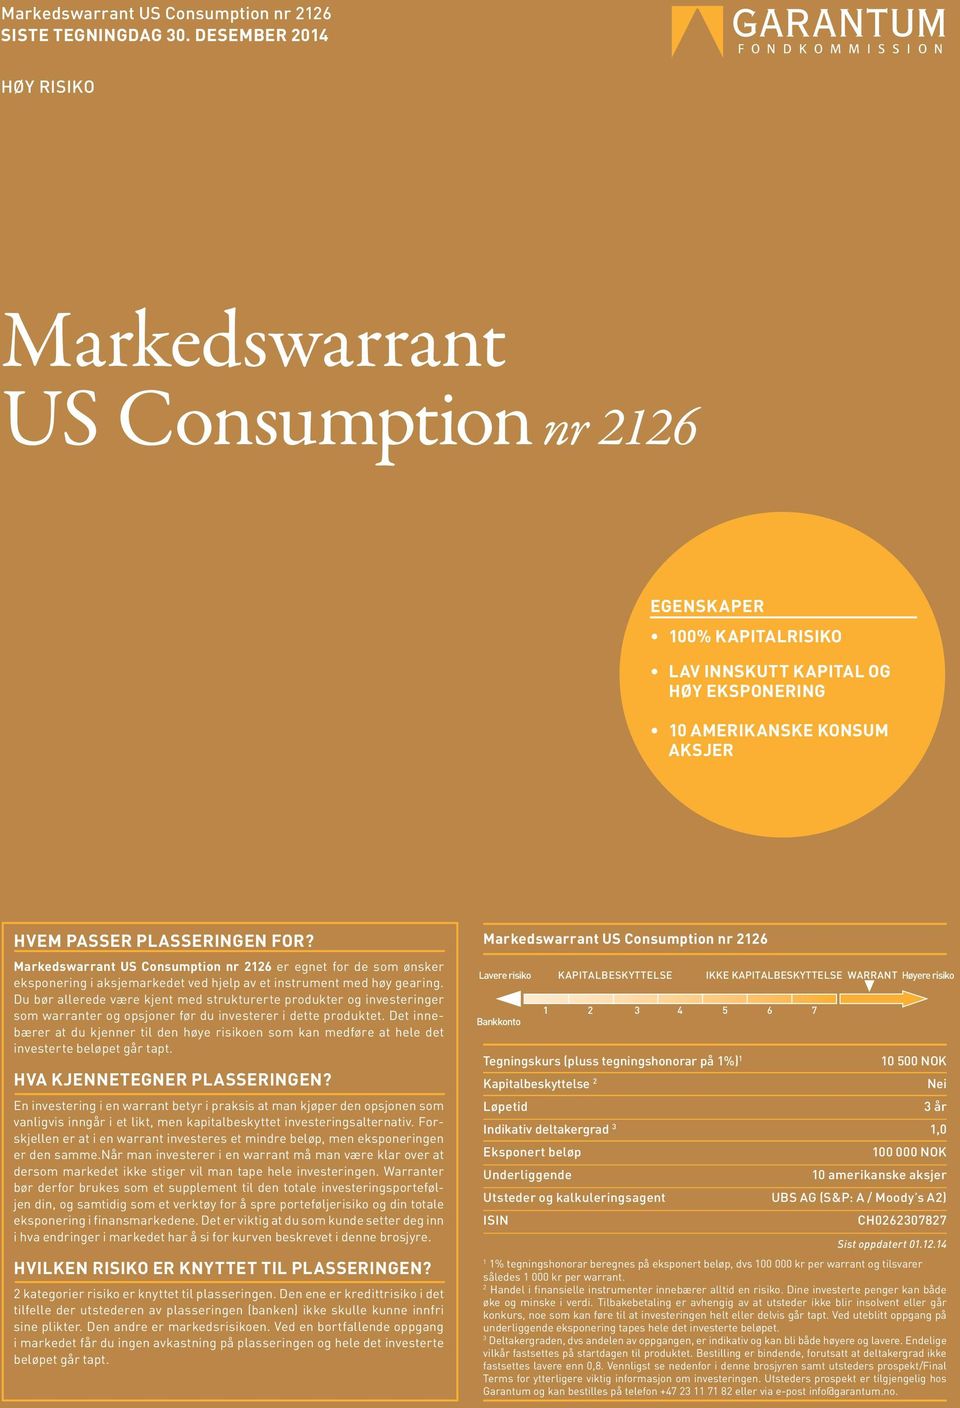 Markedswarrant US Consumption nr 2126 er egnet for de som ønsker eksponering i aksjemarkedet ved hjelp av et instrument med høy gearing.